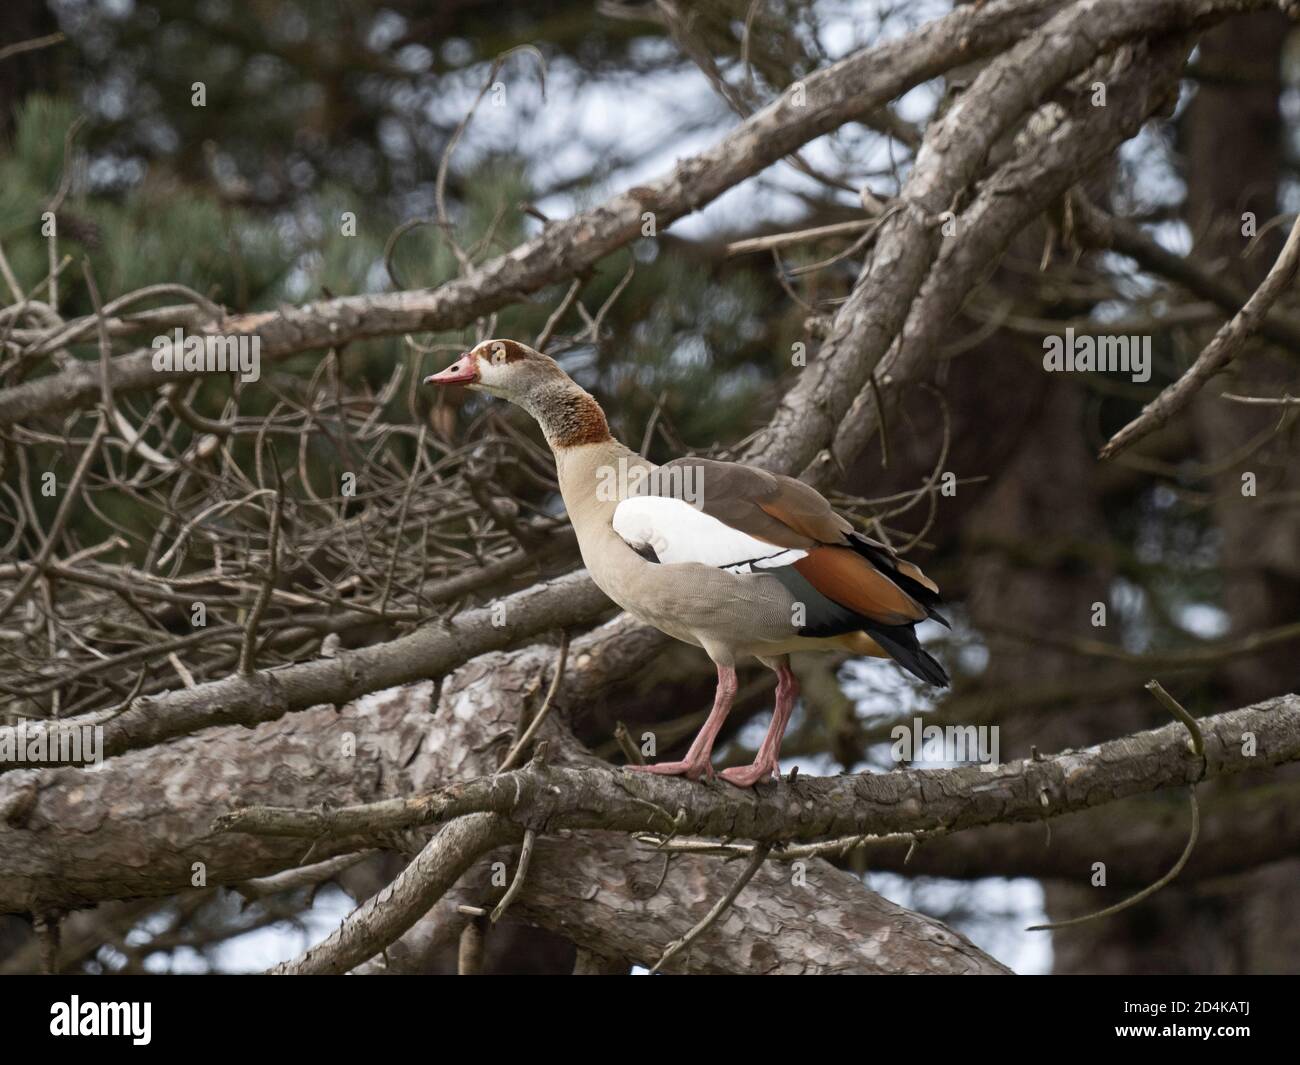 OIE d'Égypte, Alopochen aegyptiaca, au site de reproduction (nid dans les arbres), dans le nord du Norfolk au début du printemps Banque D'Images